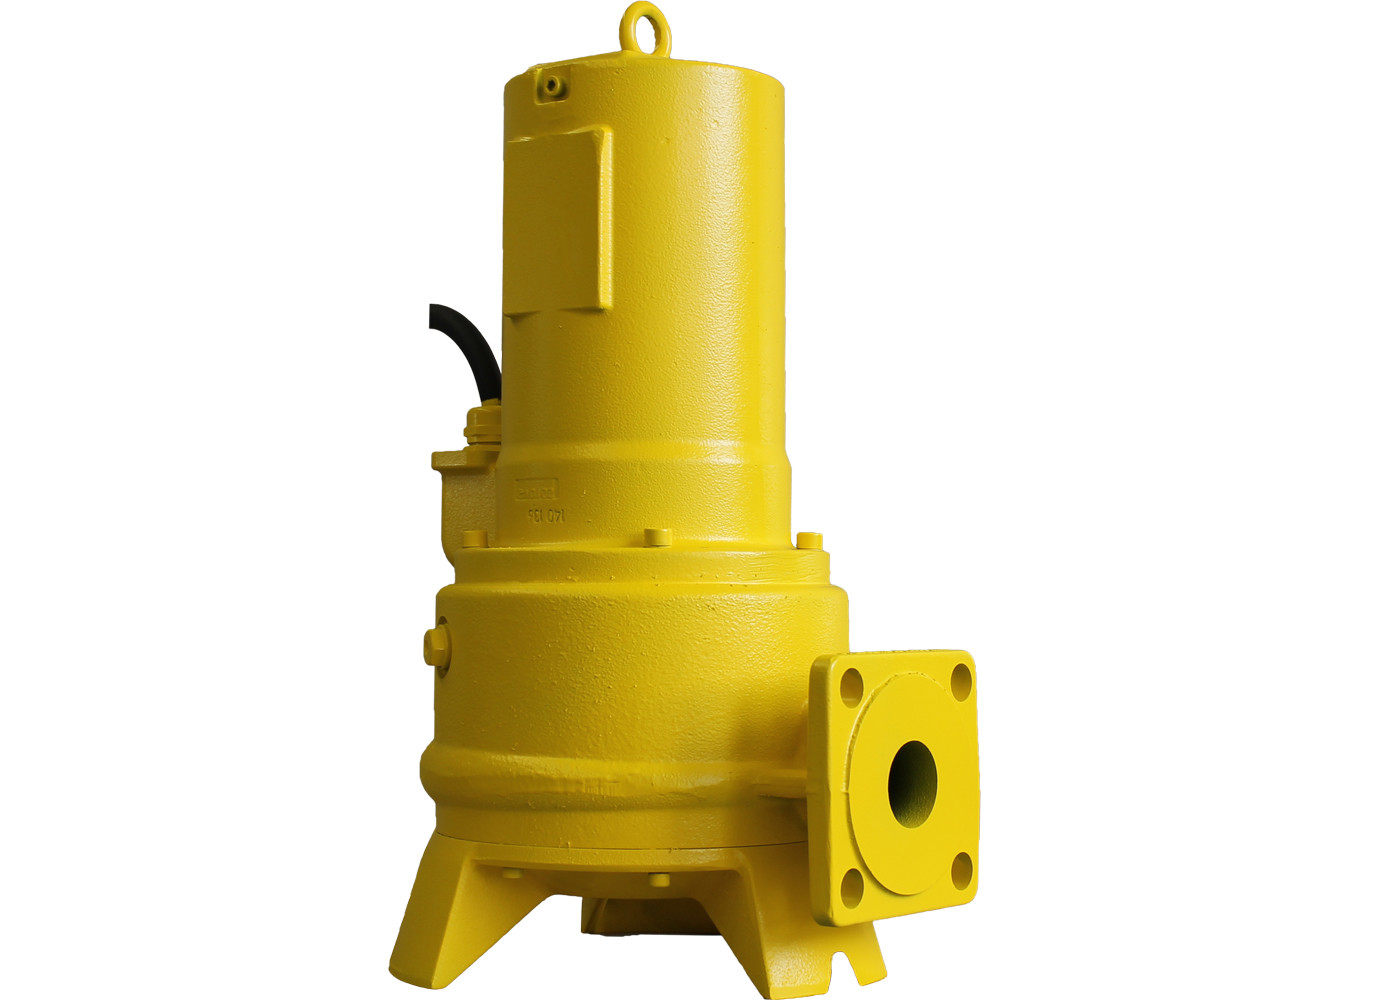 澤德ZPG 71.1系列 潛水污水提升泵 19M揚程系列